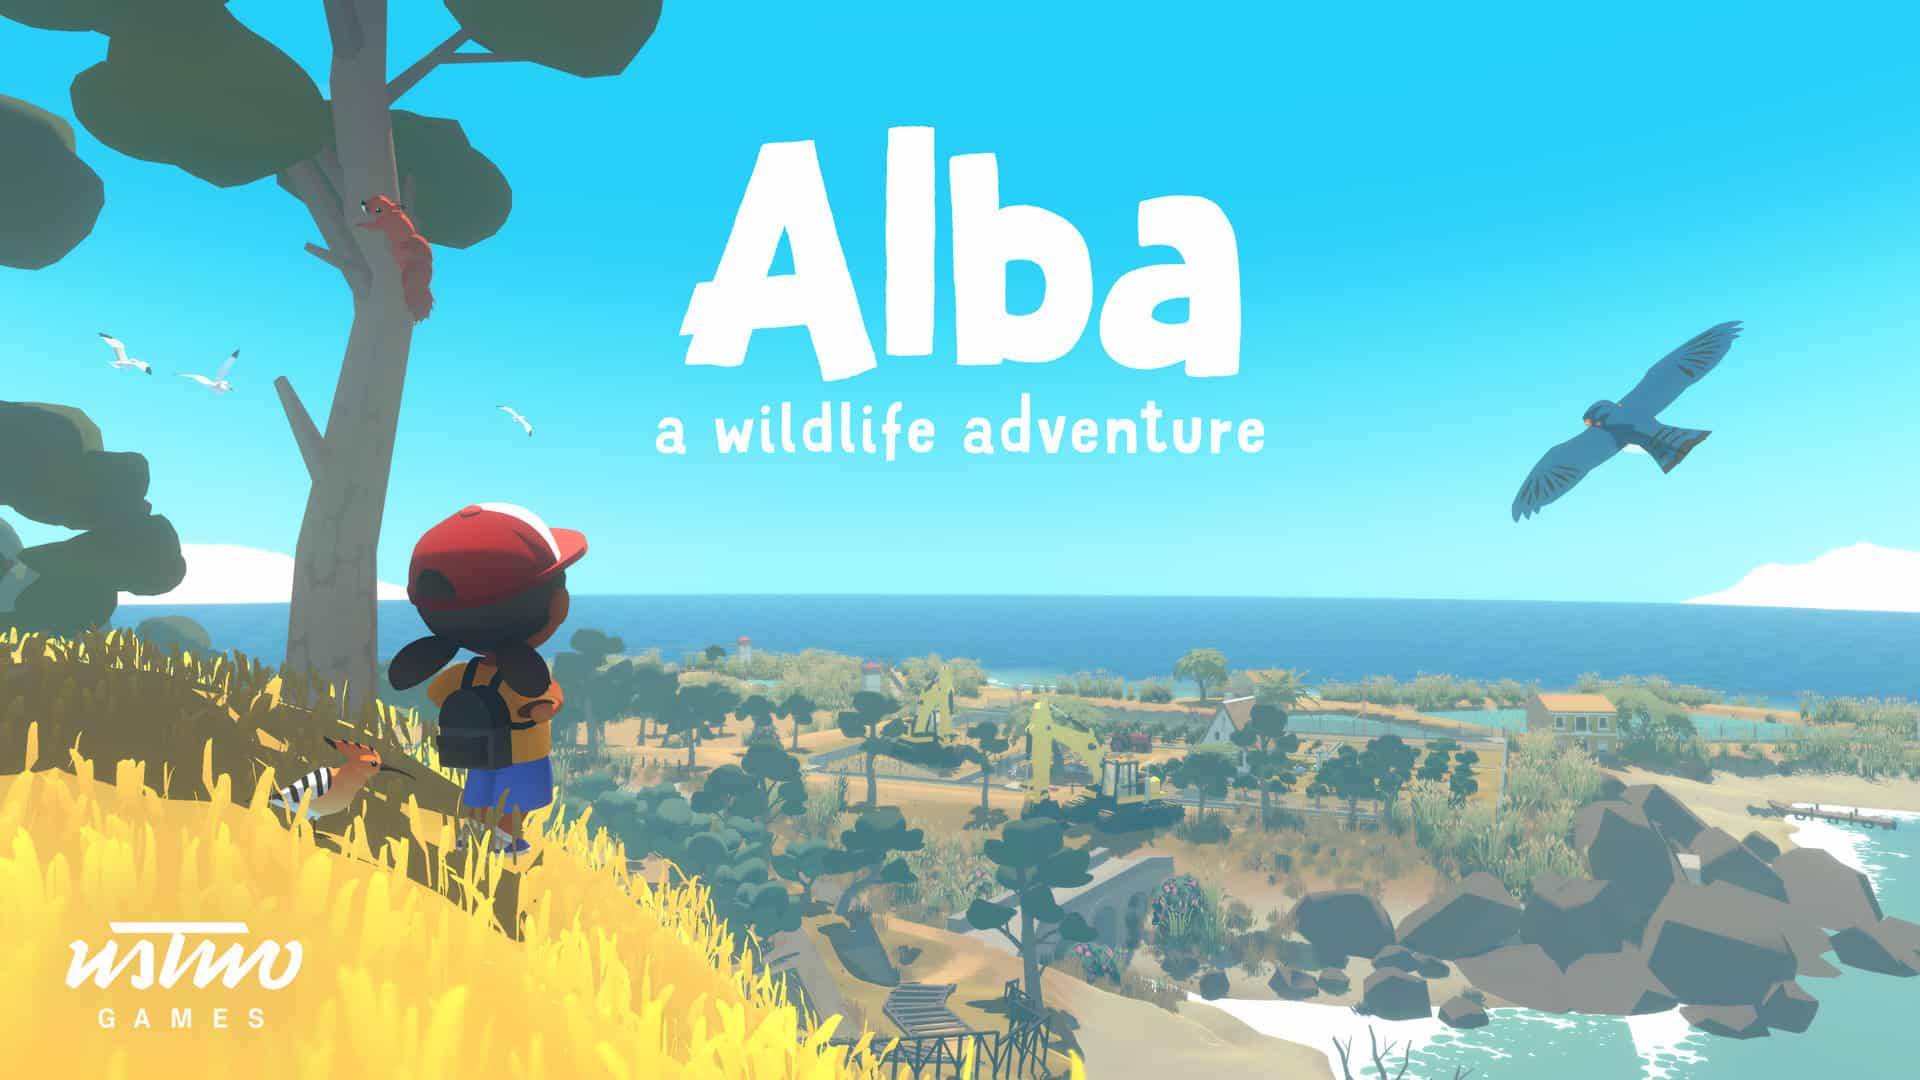 Alba The wildlife adventure